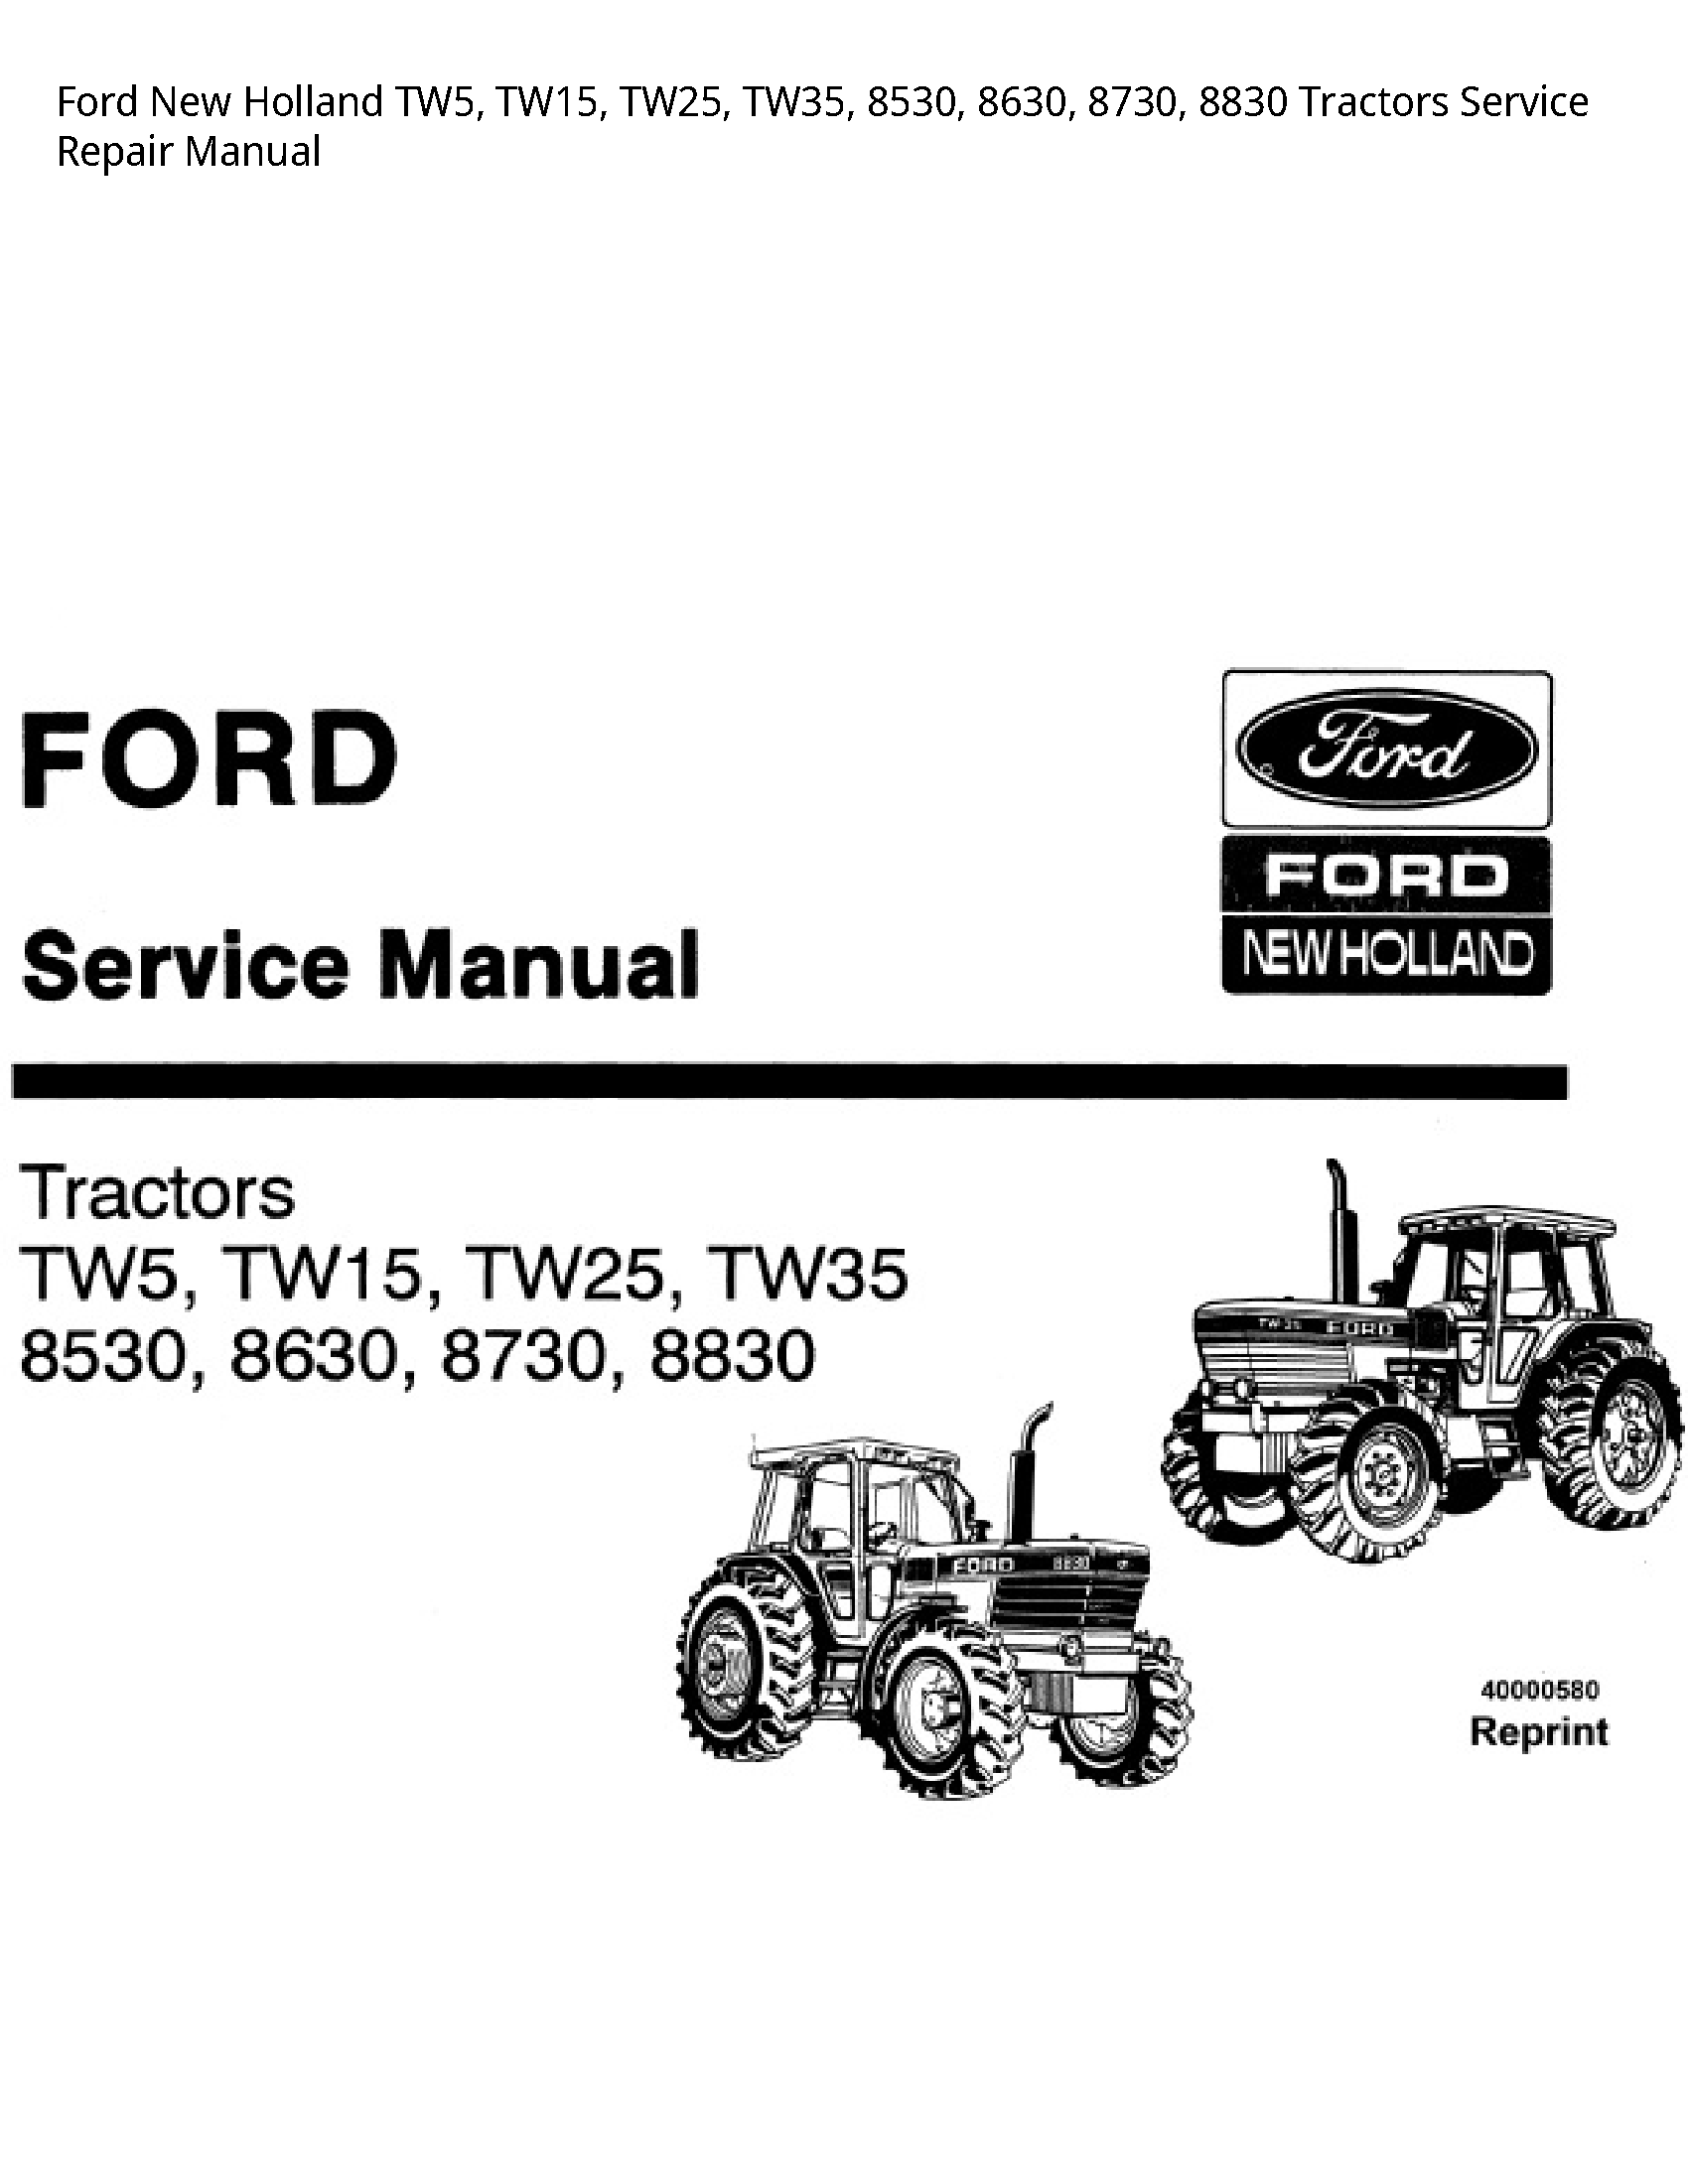  TW5 Tractors manual